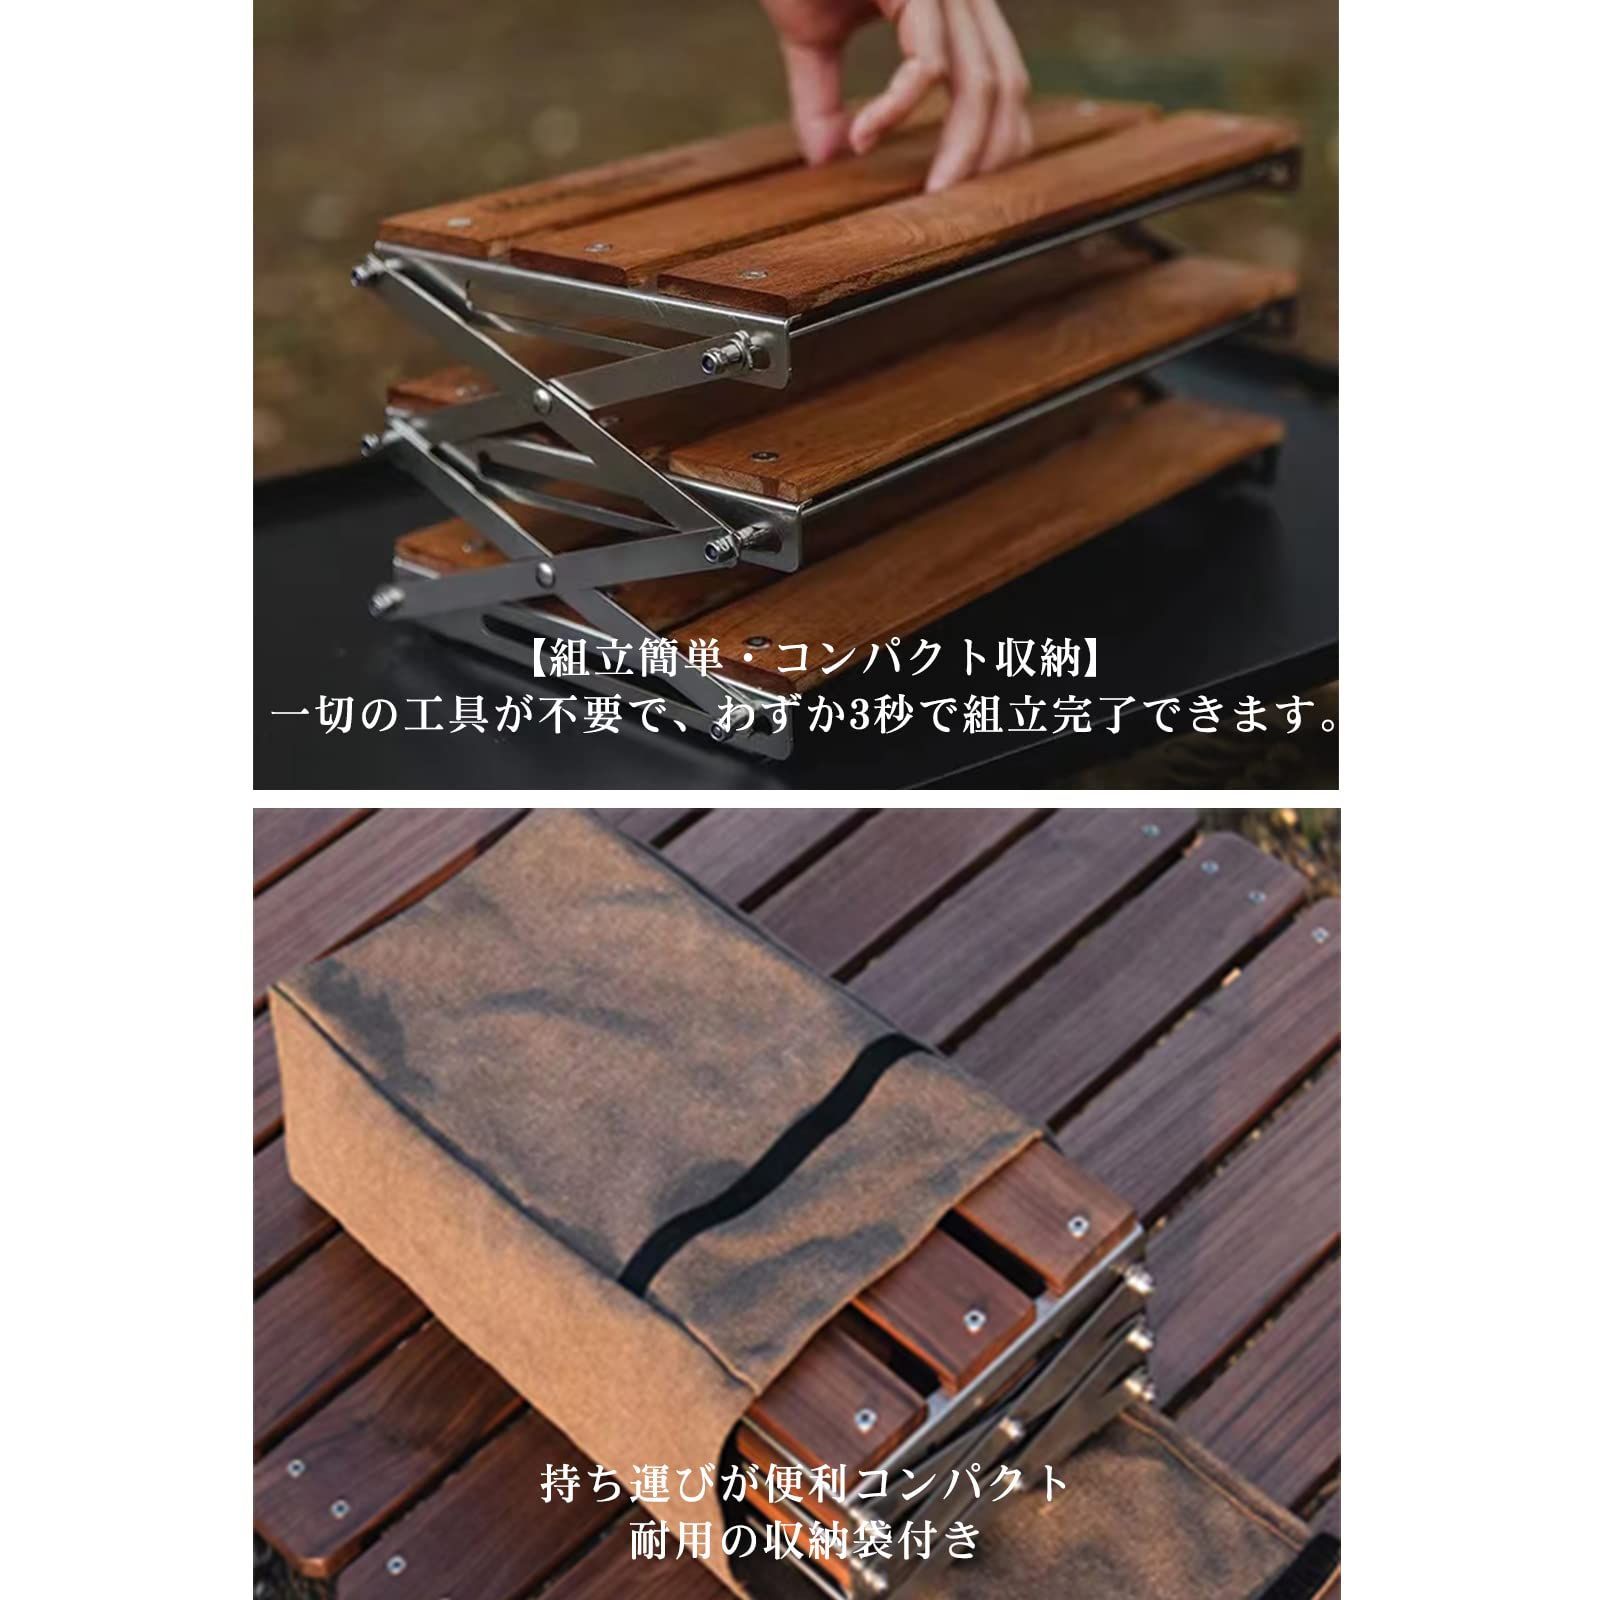 Keenature 卓上収納ラック 折り畳み式 3段 天然木製ラック 多機能 キ